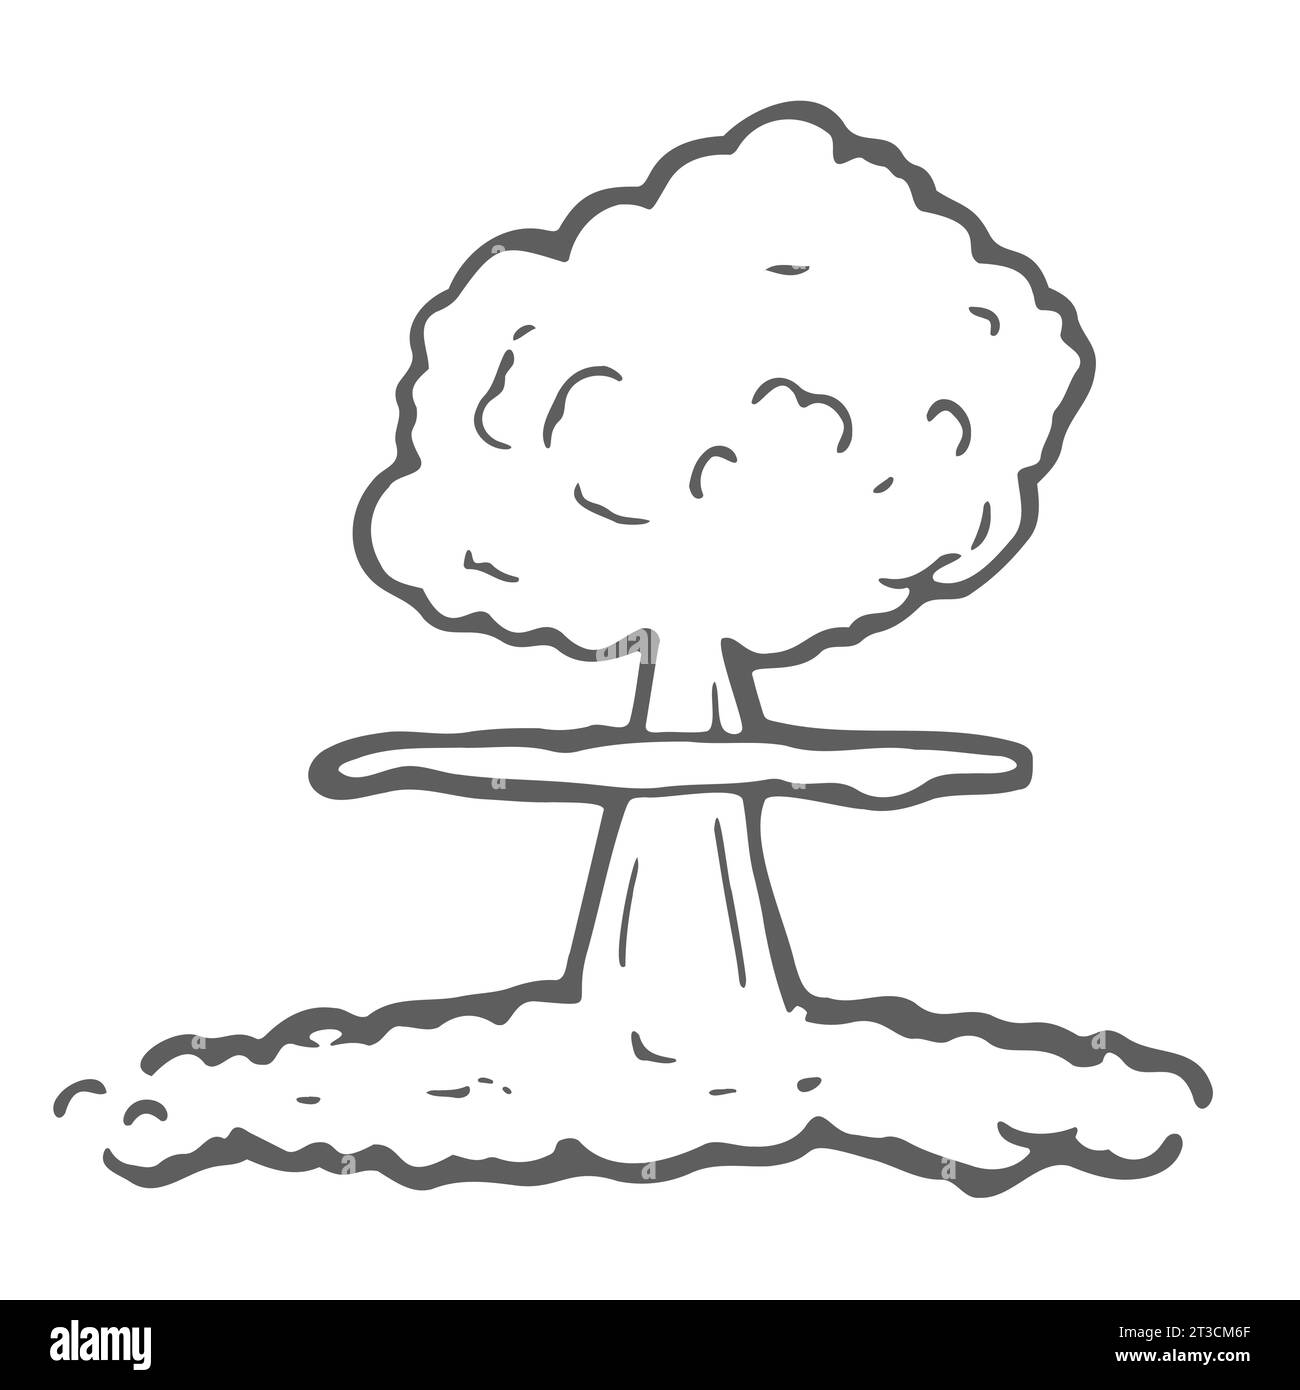 Illustrazione nuvola a fungo nucleare in stile Doodle in formato vettoriale adatta per il web, la stampa Illustrazione Vettoriale